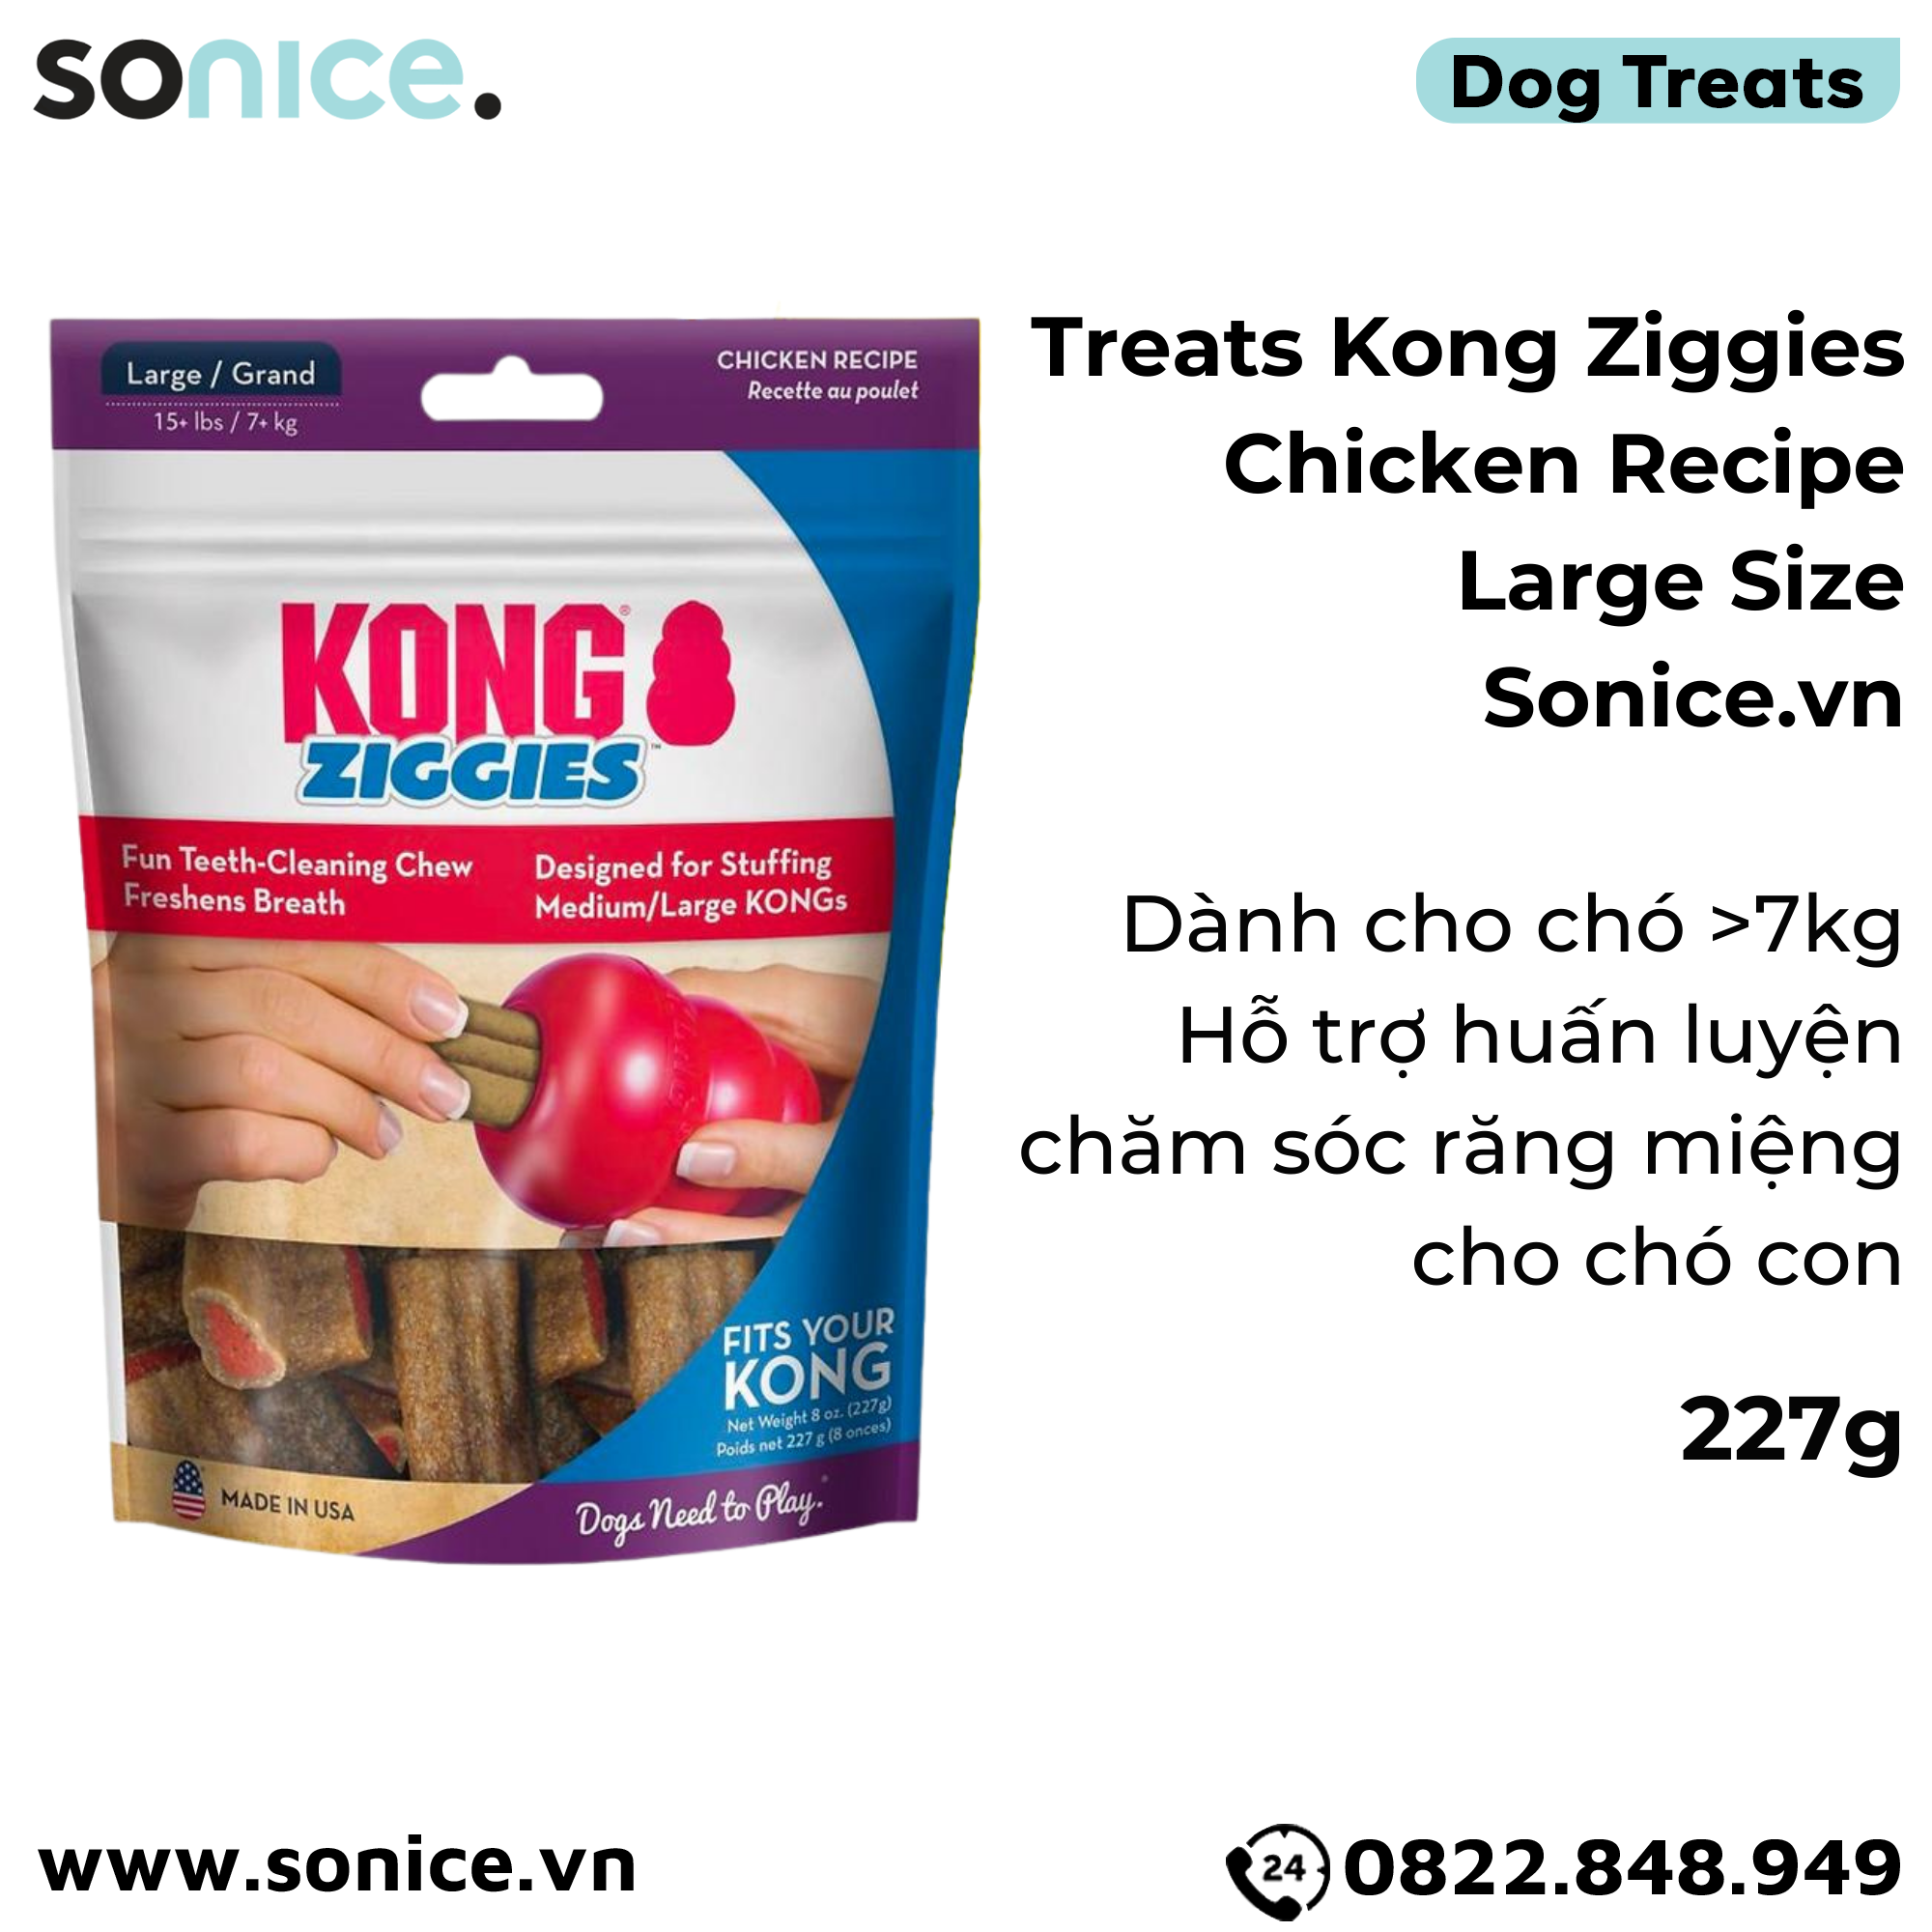  Treats Kong Ziggies Chicken Recipe Large Size 227g - Cho chó >7kg, hỗ trợ huấn luyện, chăm sóc răng miệng cho chó con SONICE. 